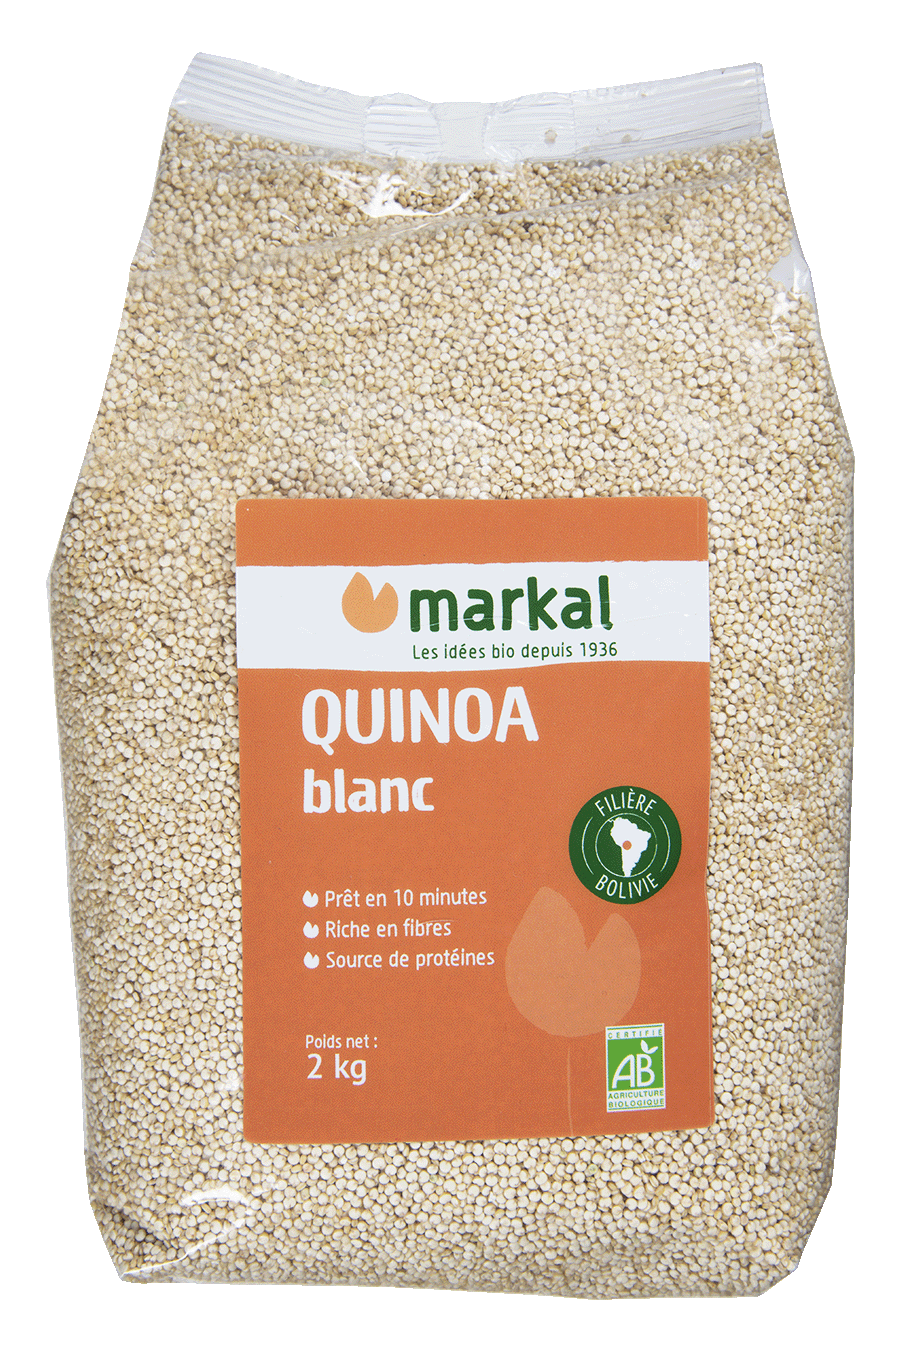 Real white quinoa